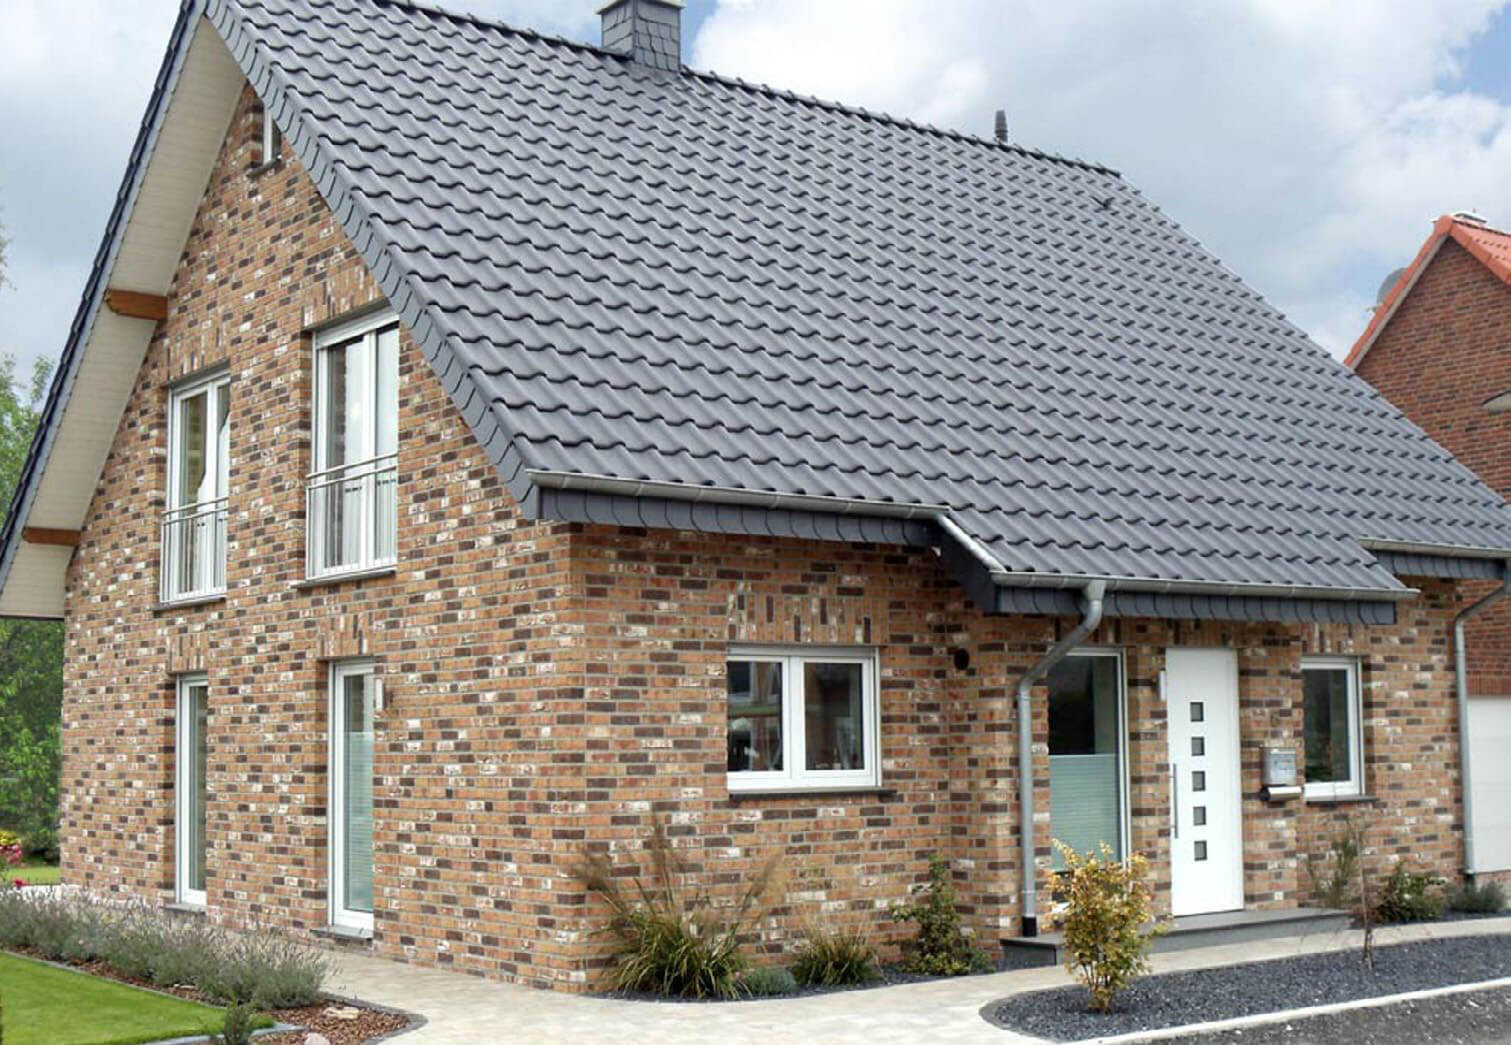 Dachówki ceramiczne - dobieramy do stylu domu i rodzaju dachu